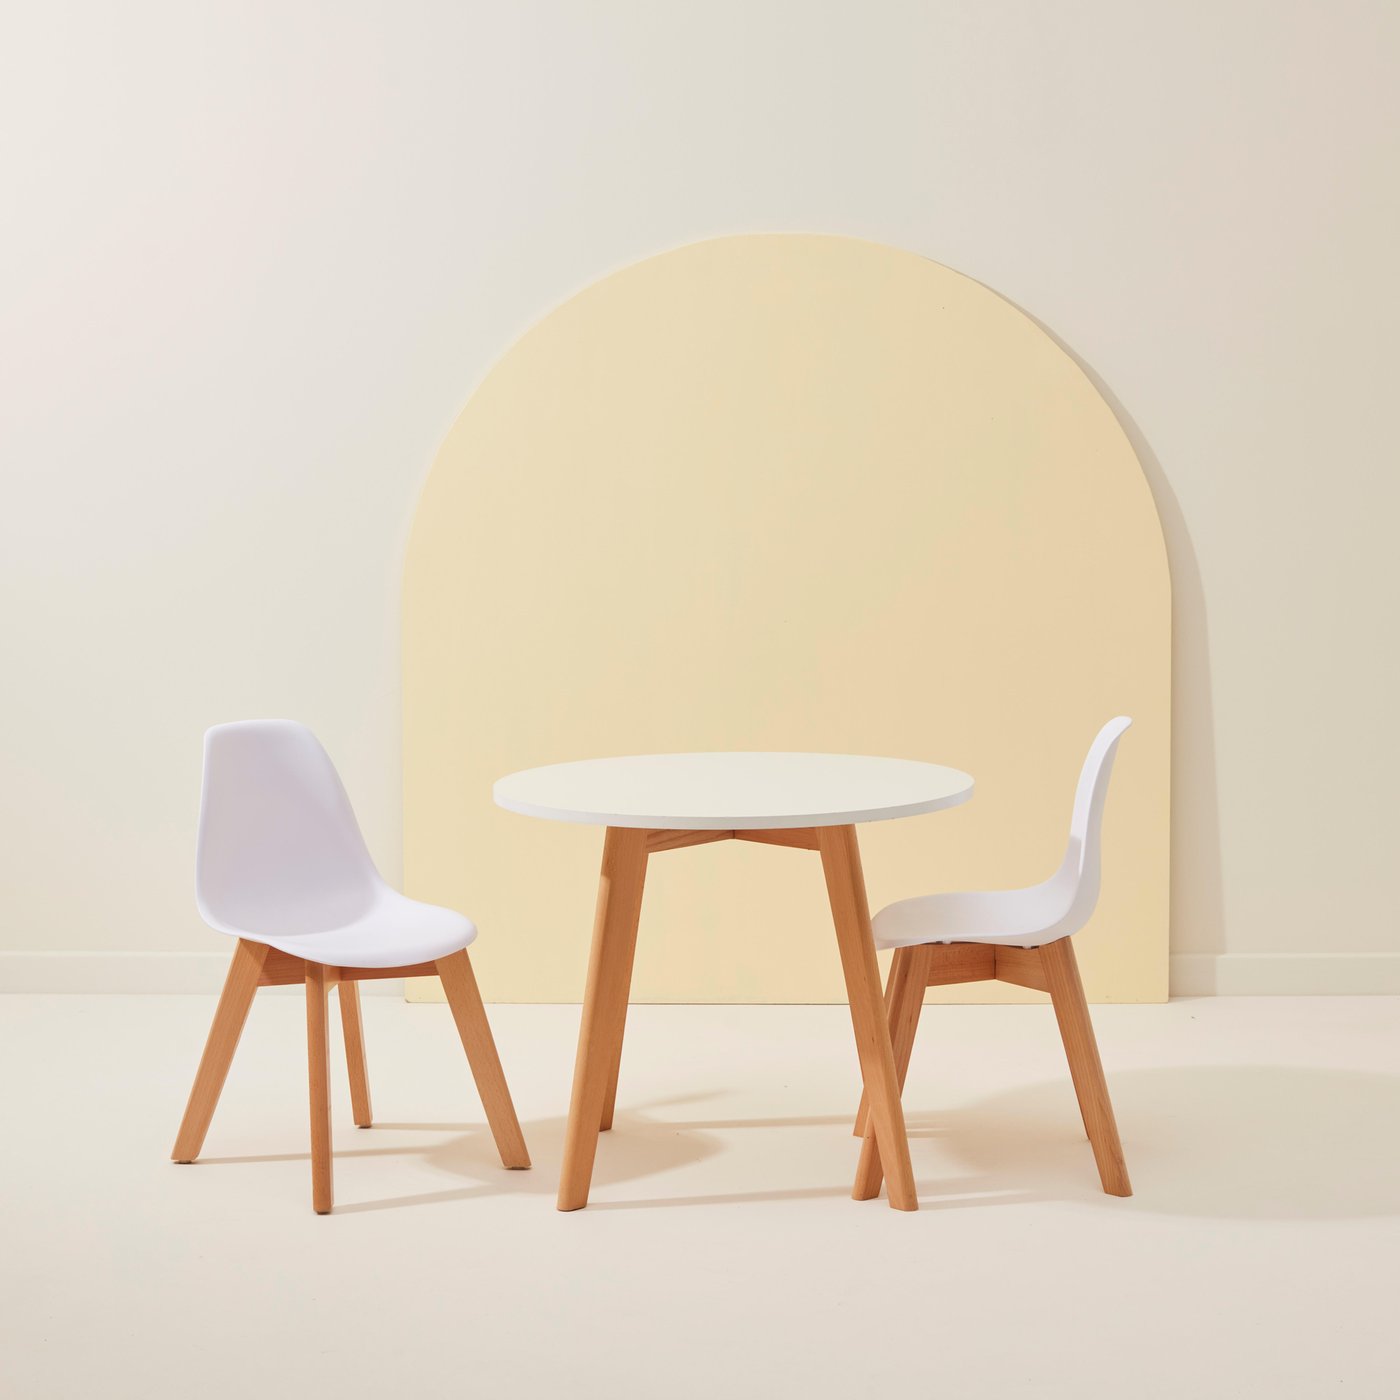 MATHIAS mesa de criança com 2 cadeiras natural/branco A 49 cm - Ø 60 cm